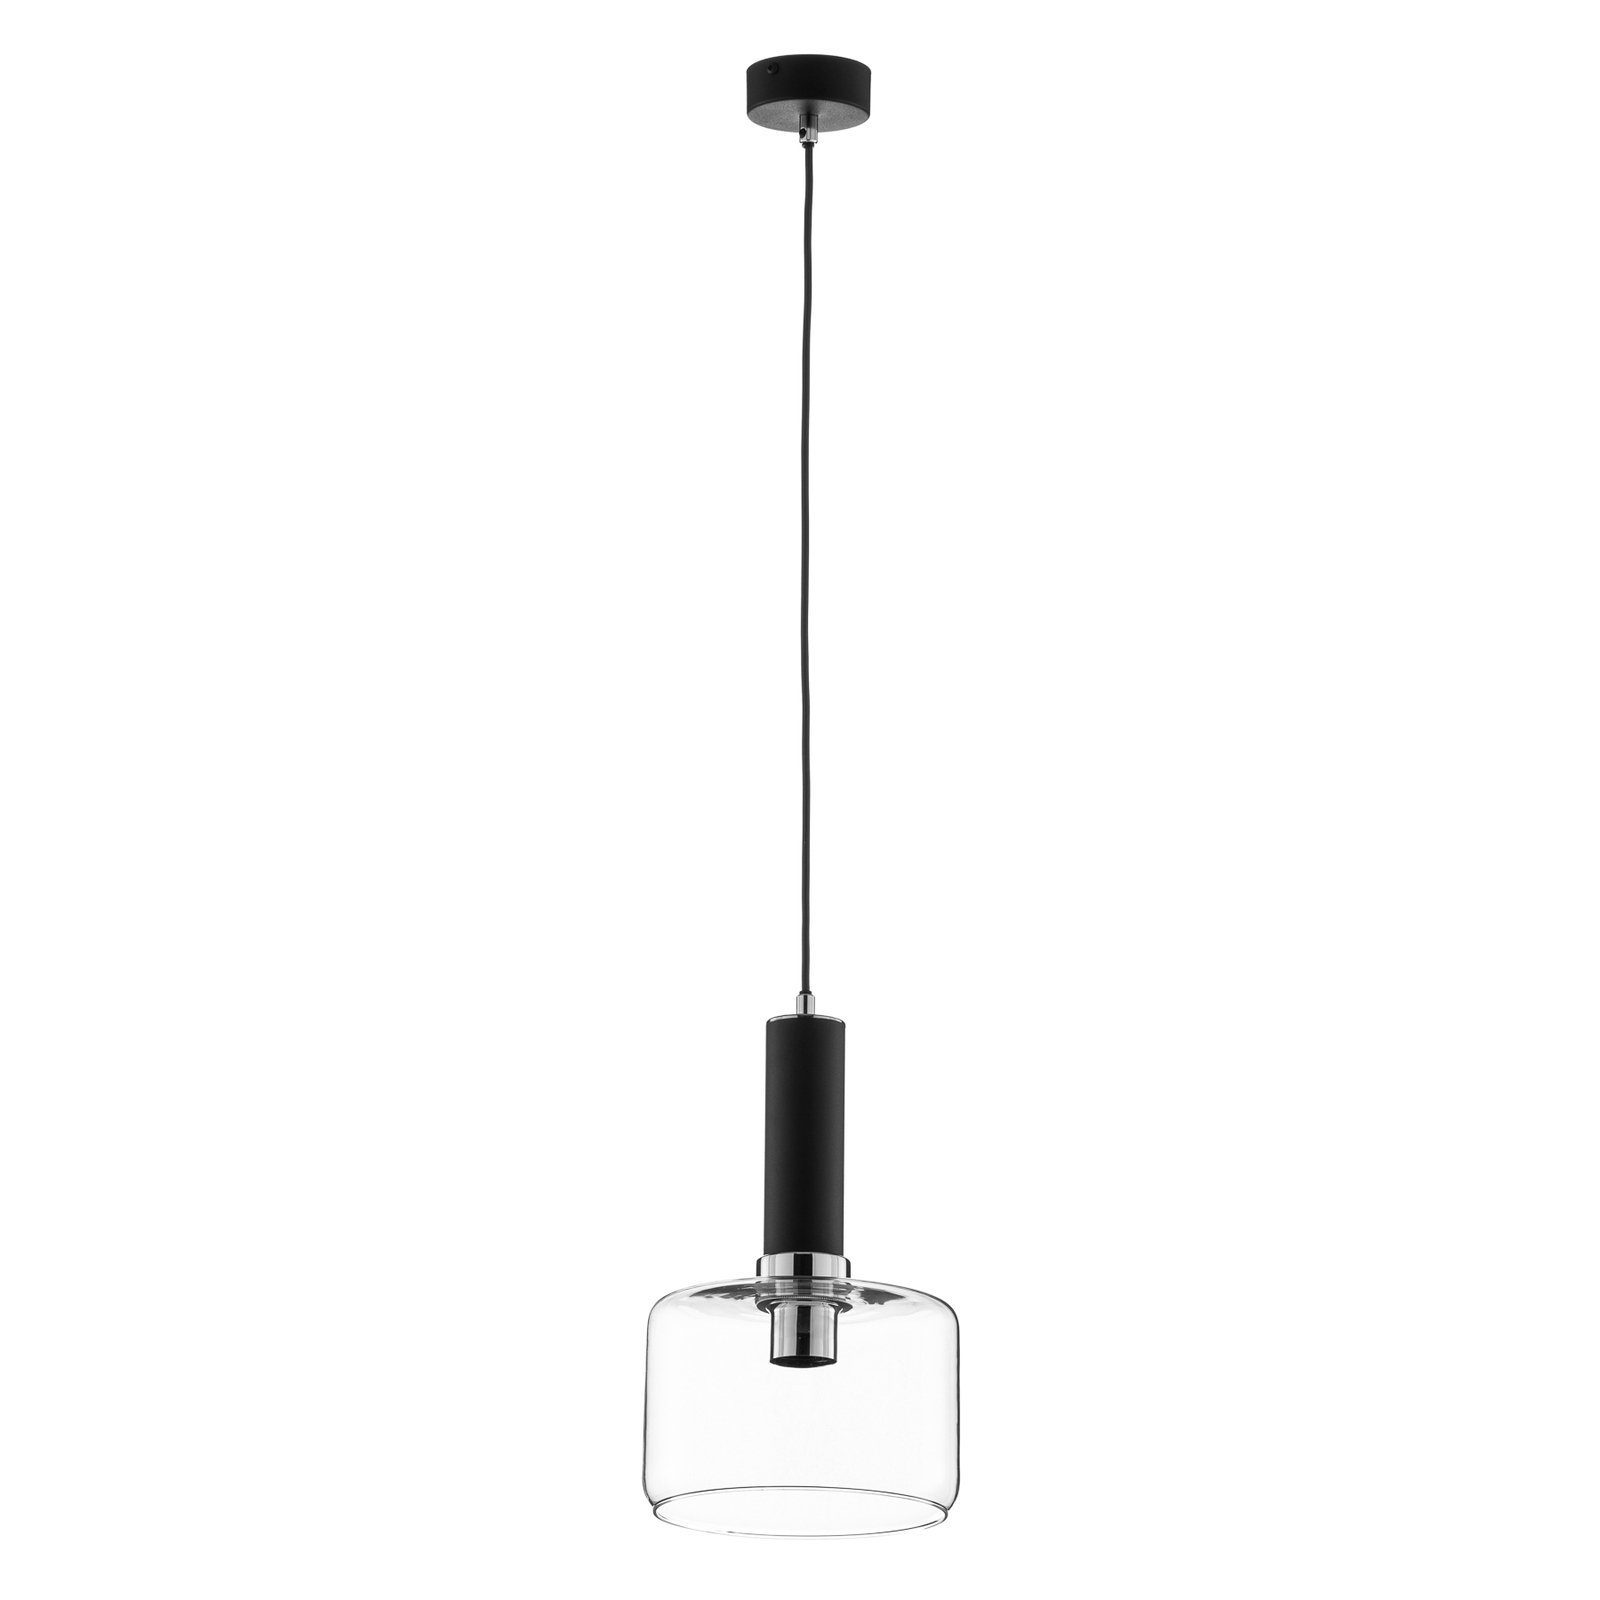 Hanglamp Viva, helder/zwart/chroom, 1-lamp